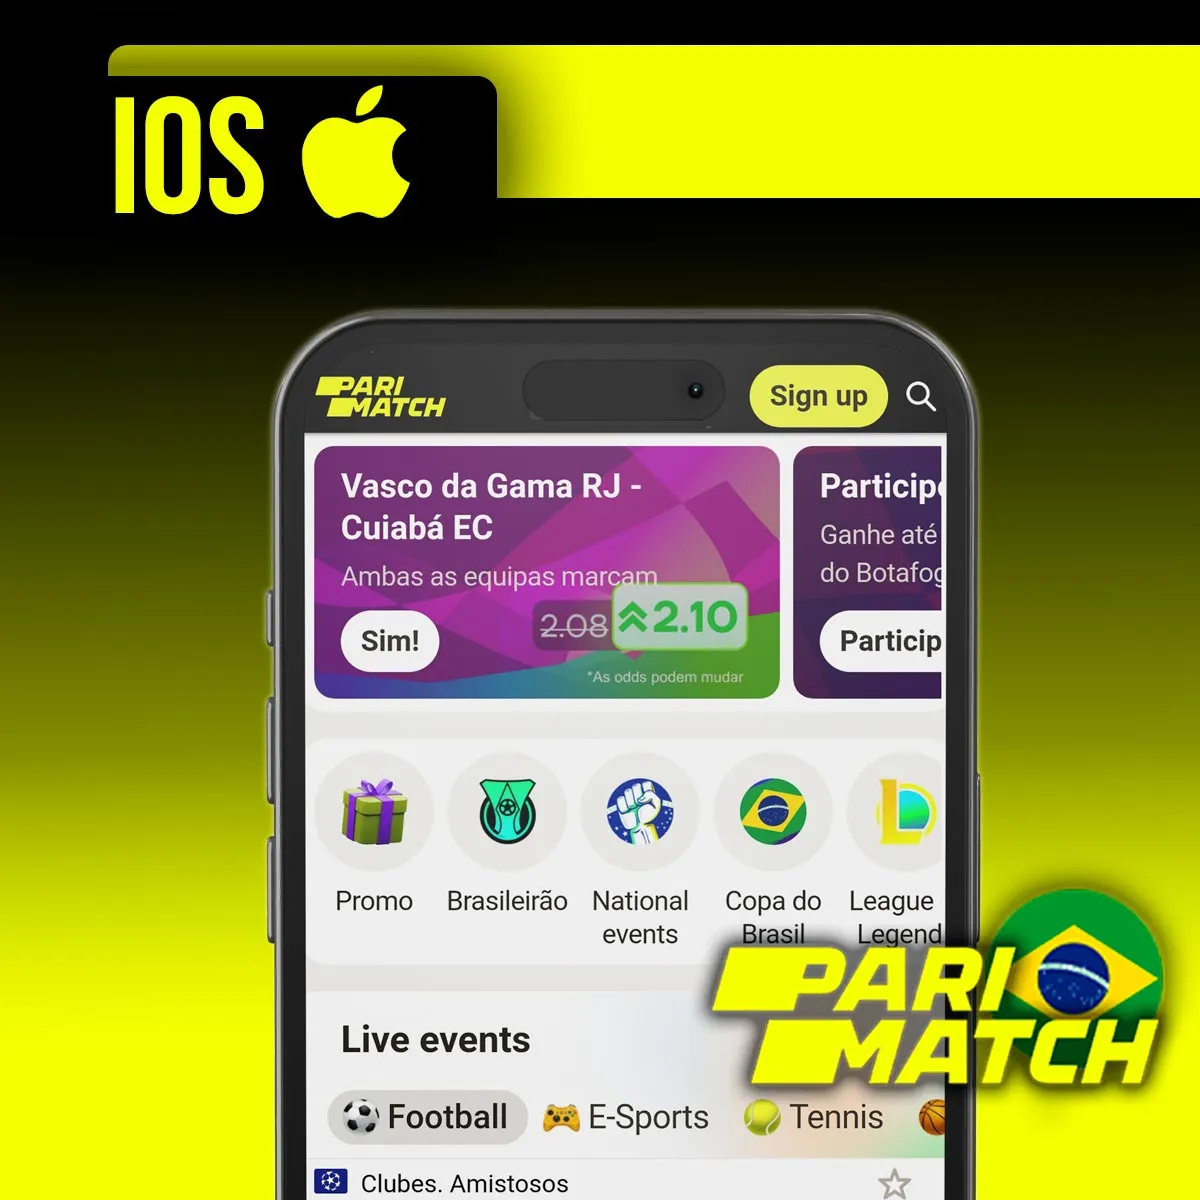 Aplicativo móvel para iOS da casa de apostas Parimatch no Brasil